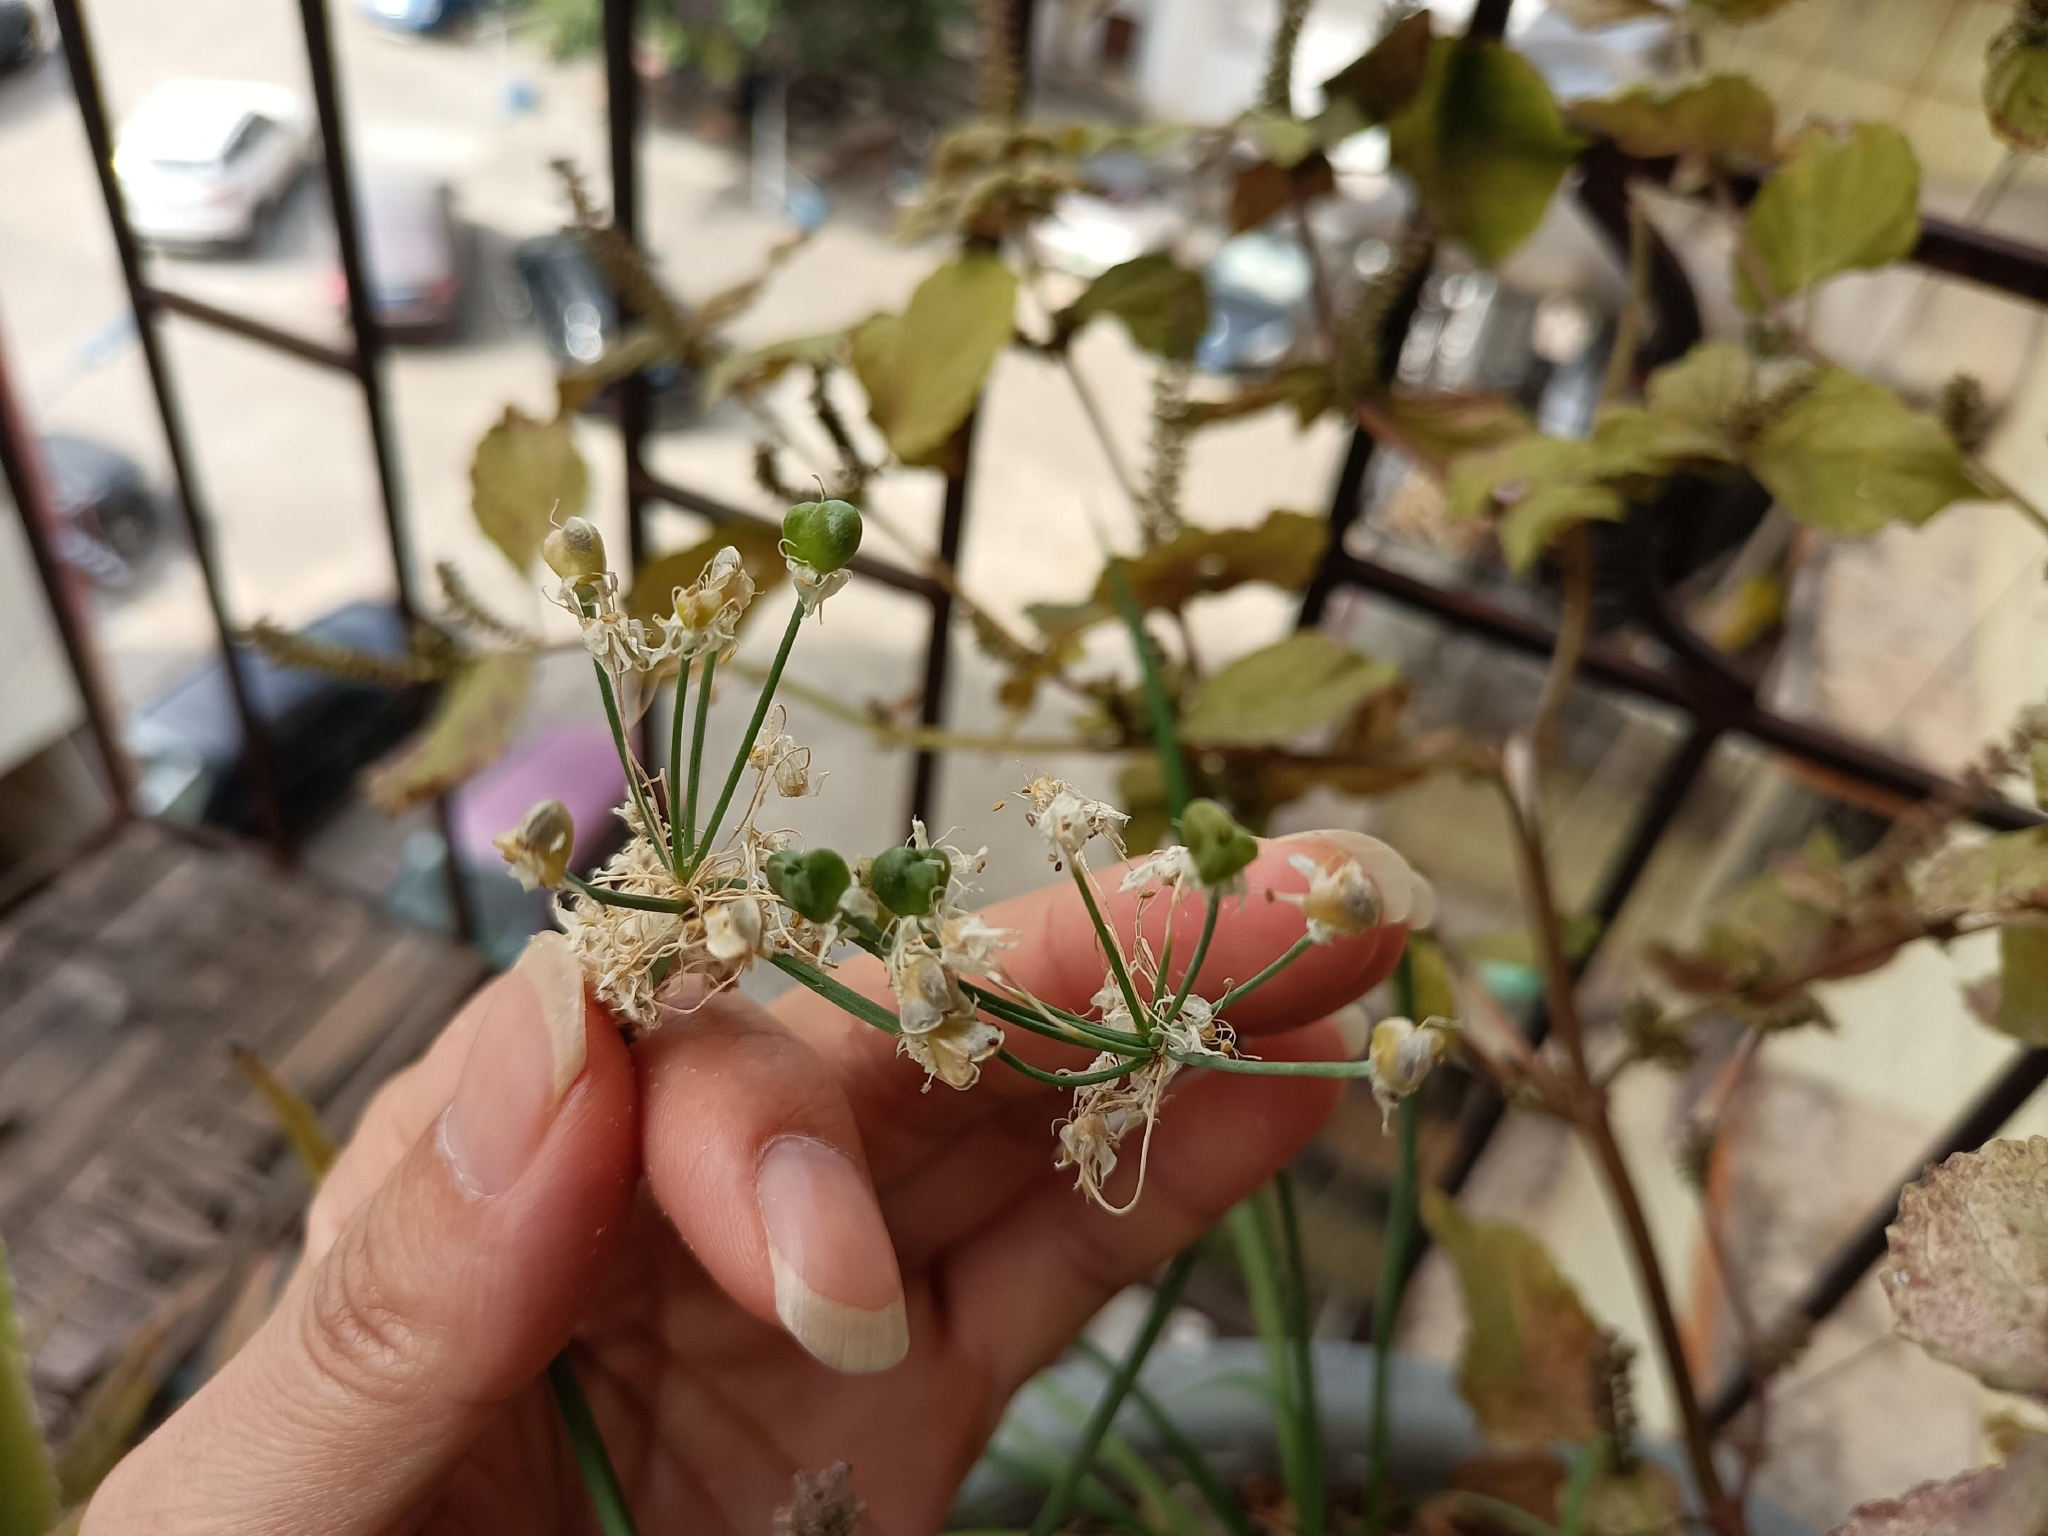 【你好夏天】母亲养的韭菜兰和家天竺葵开花了 - 新影像风光 花粉俱乐部